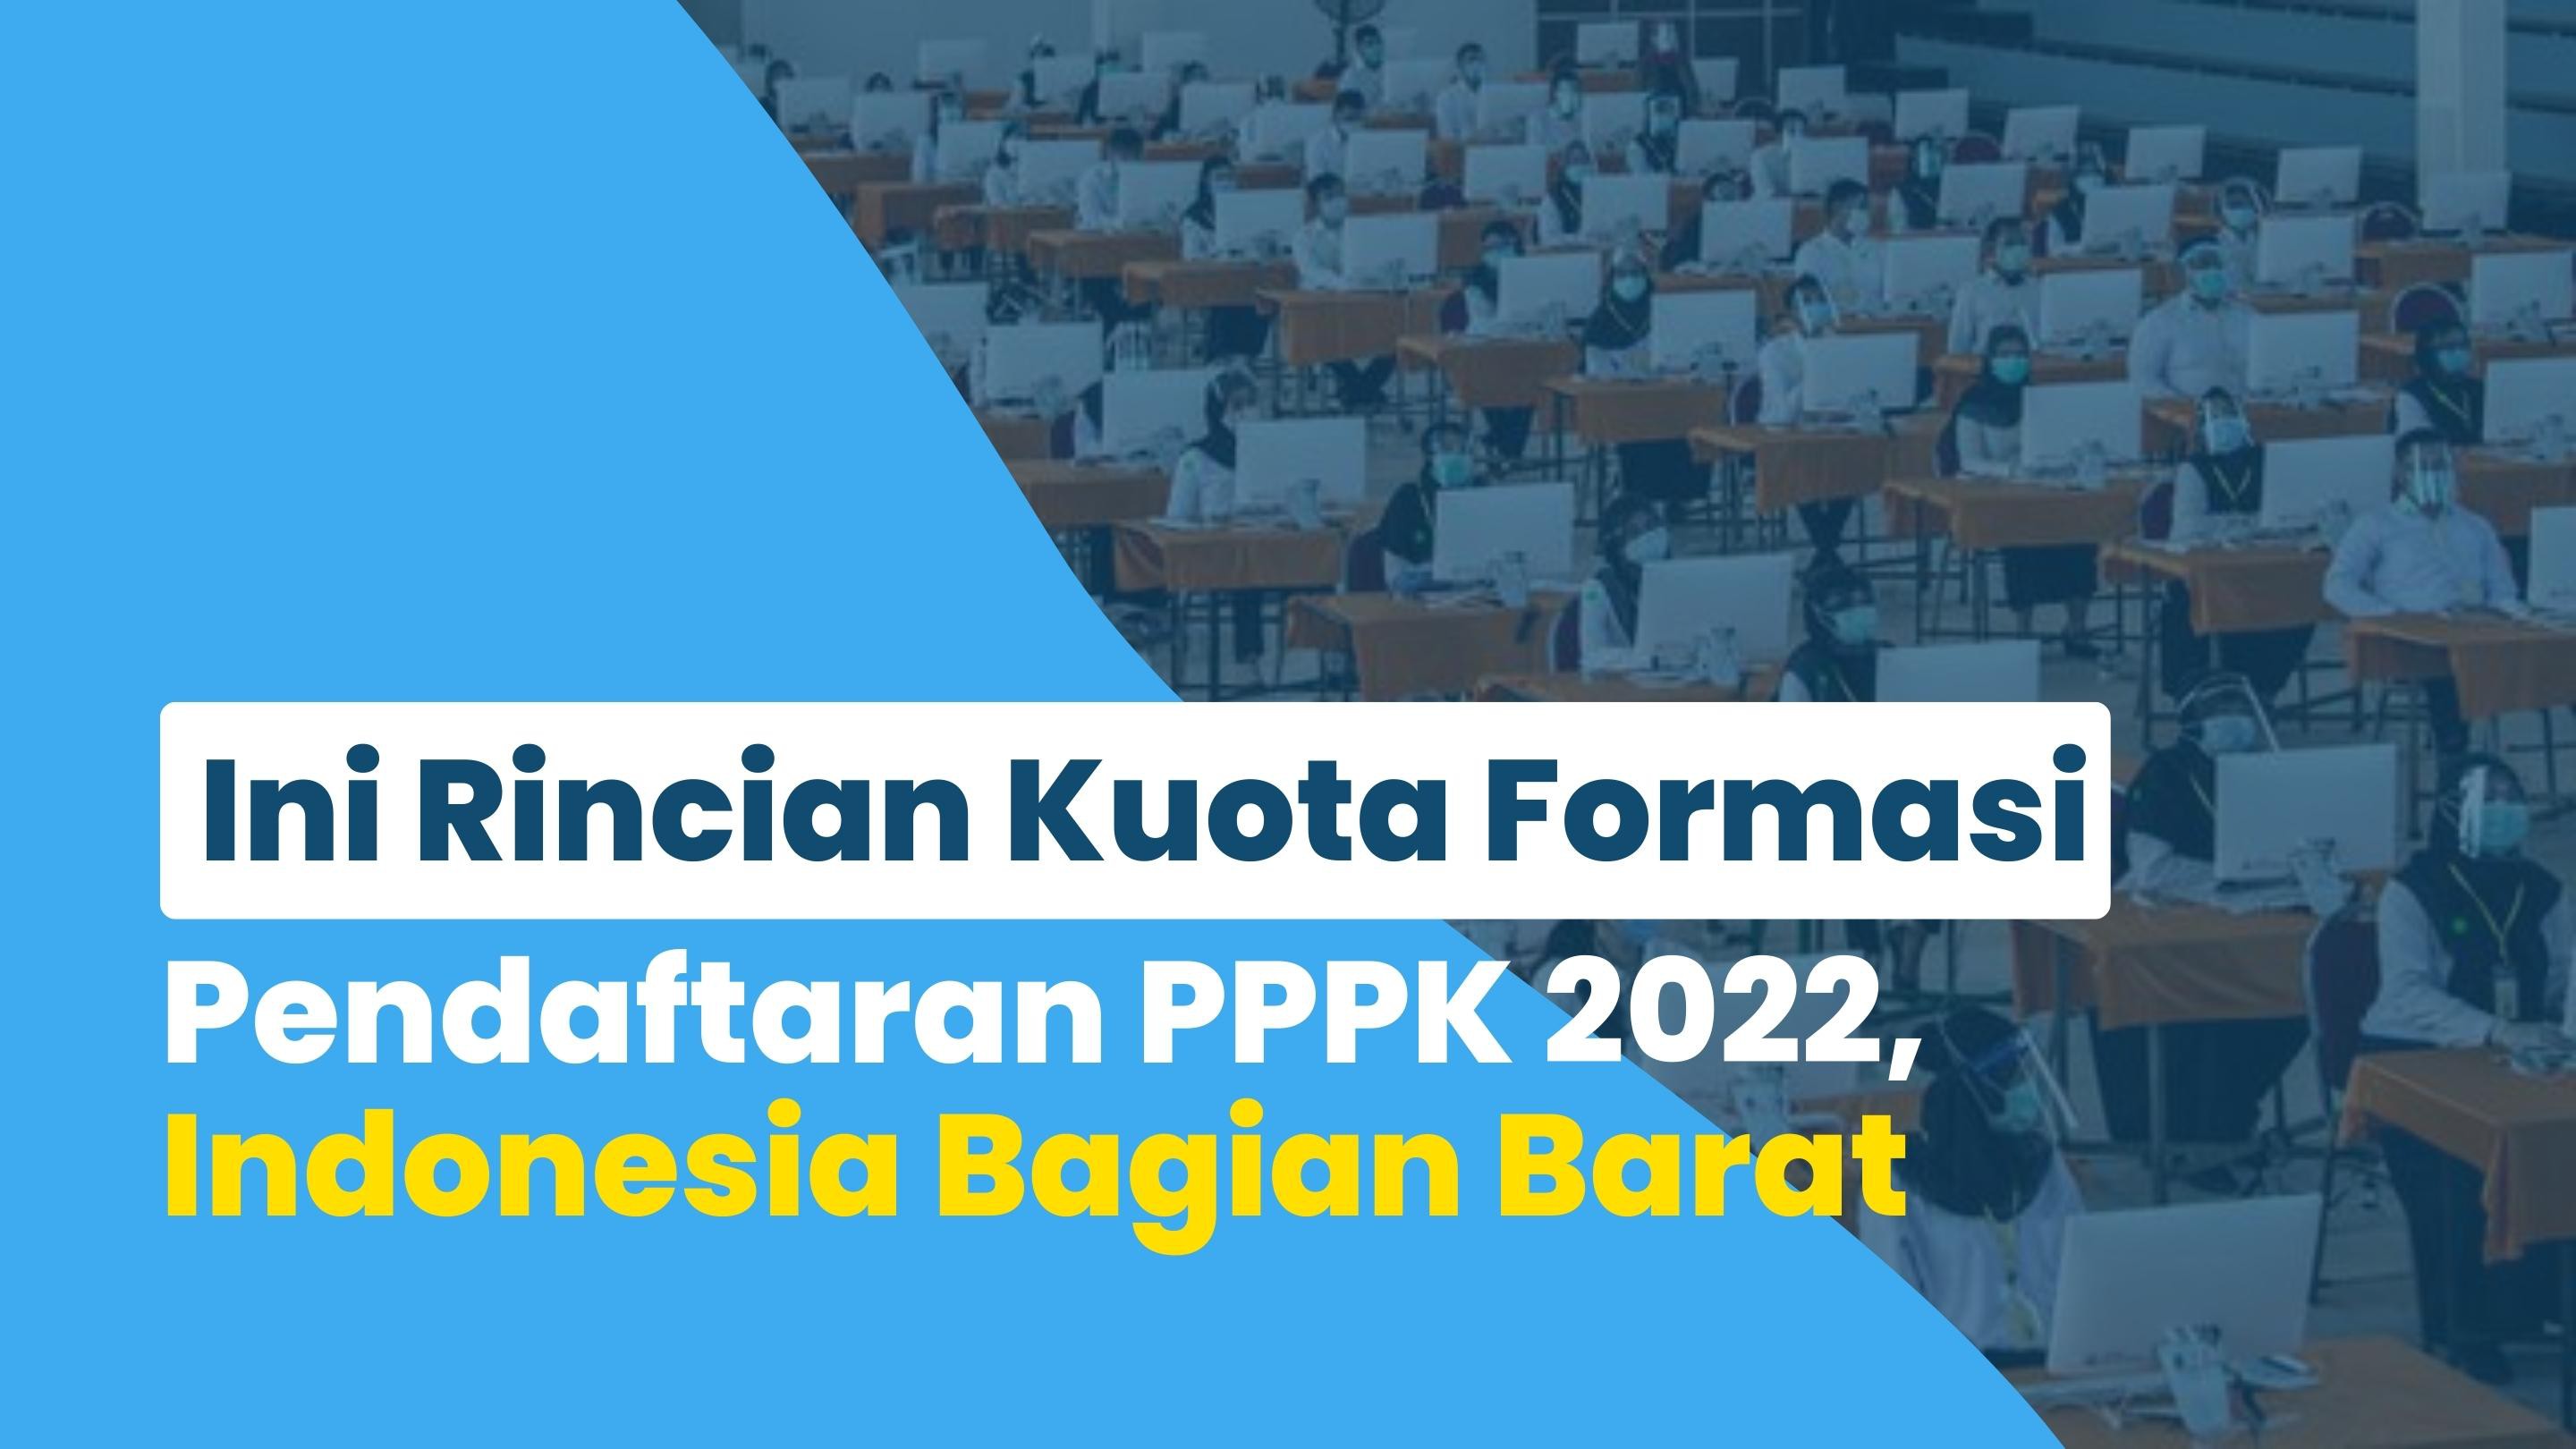 Ini Rincian Kuota Formasi Pendaftaran PPPK 2022, Indonesia Bagian Barat